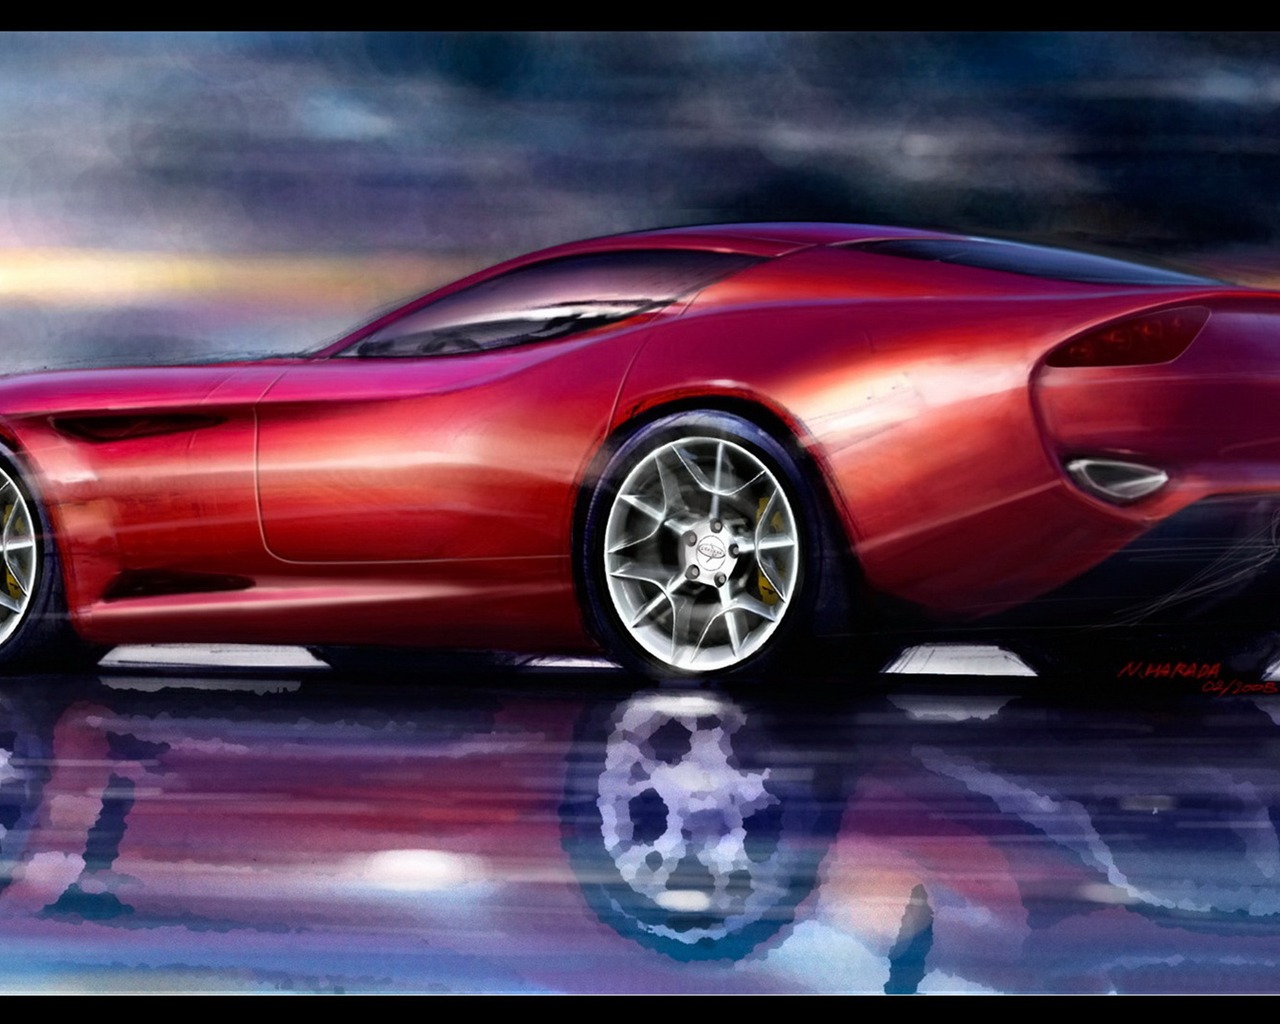 Zagato-designed Perana Z-One sports car #1 - 1280x1024